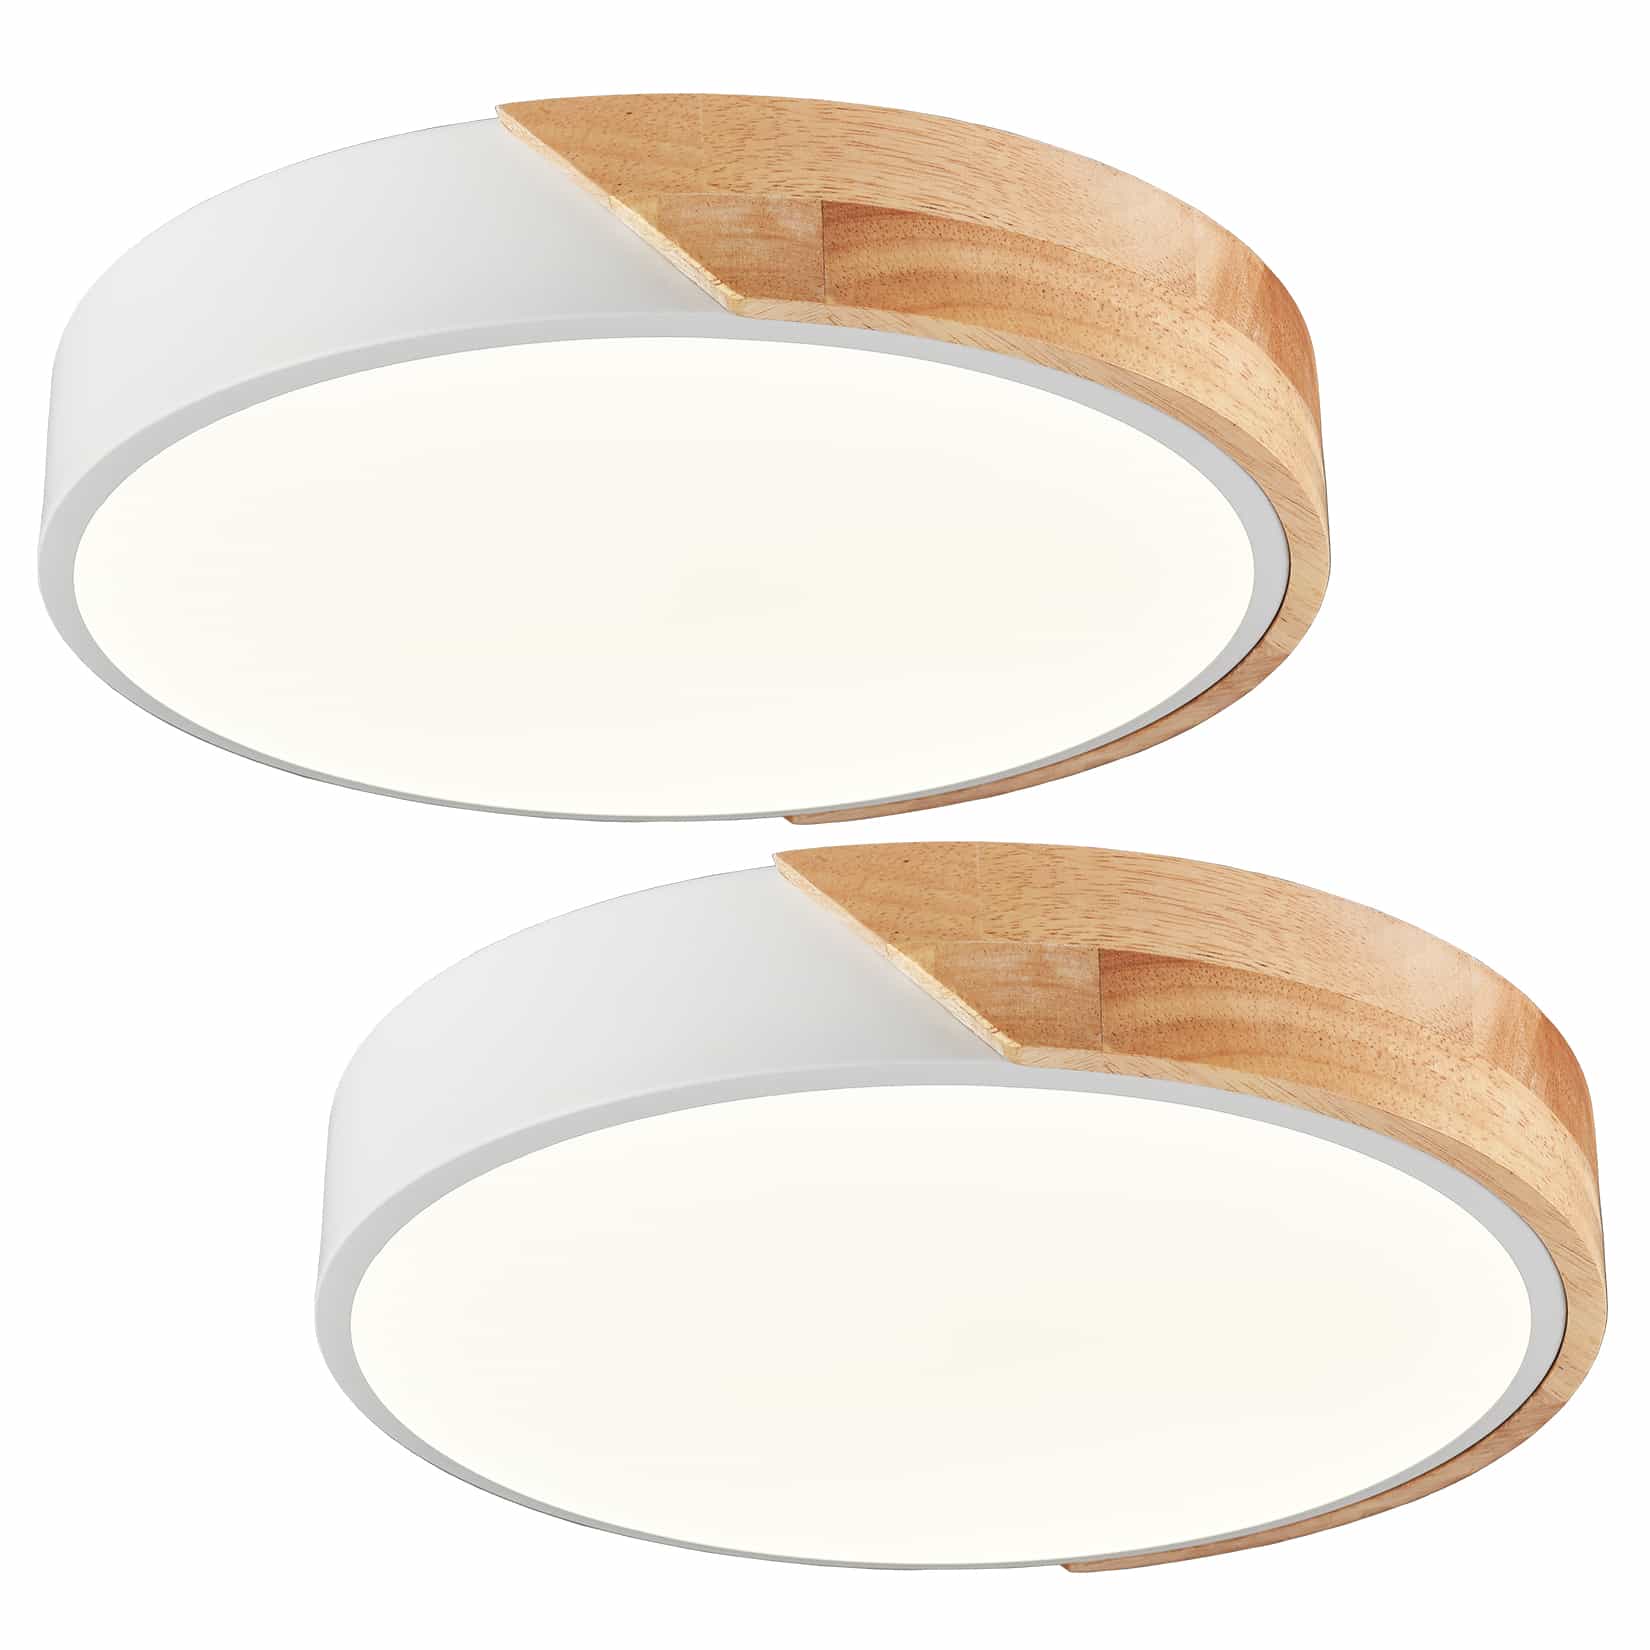 Minimalist White and Wood LED Flush Mount Ceiling Light